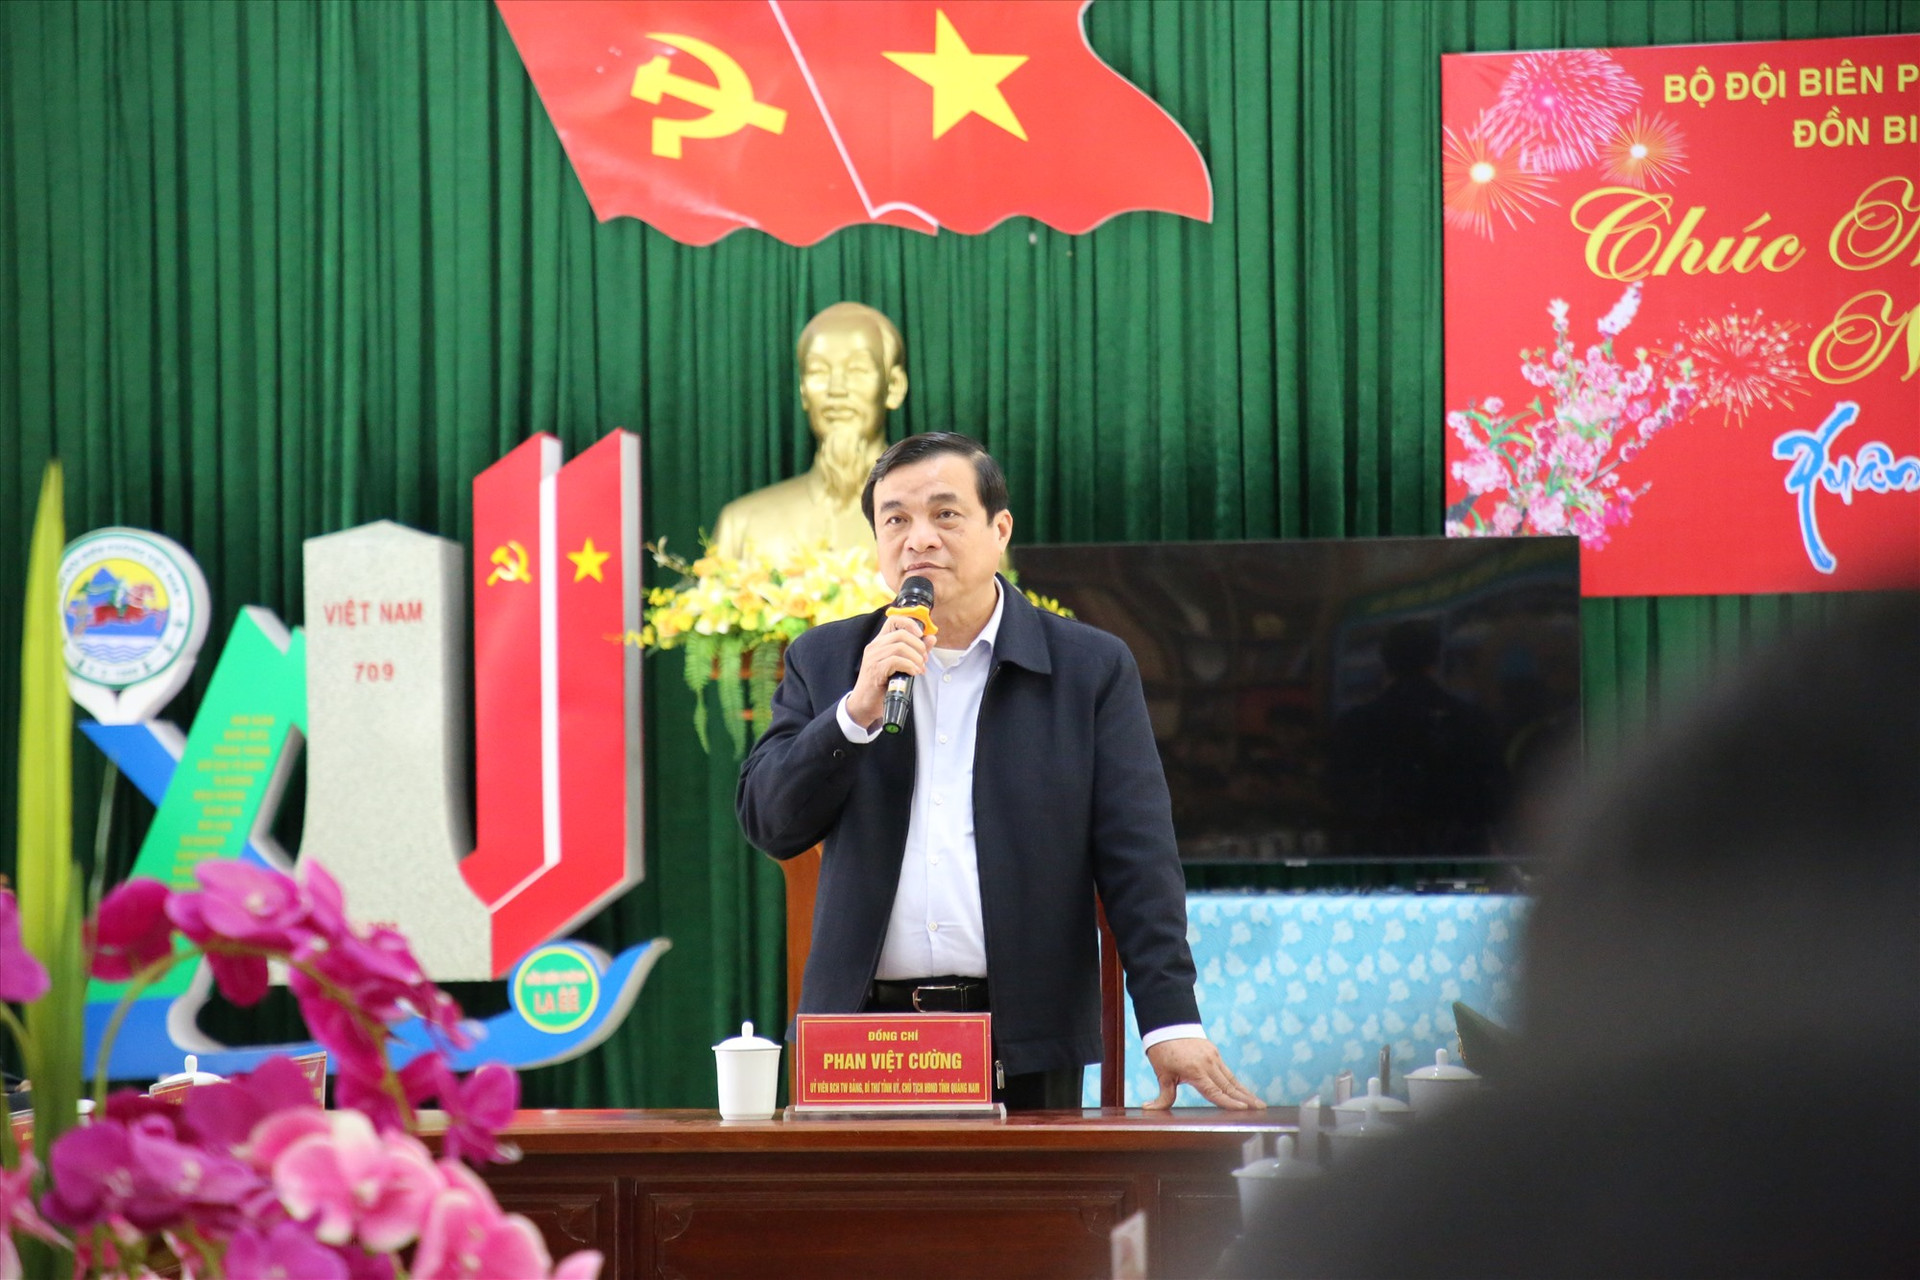 Đồng chí Phan Việt Cường phát biểu tại buổi đến thăm. Ảnh: A.N